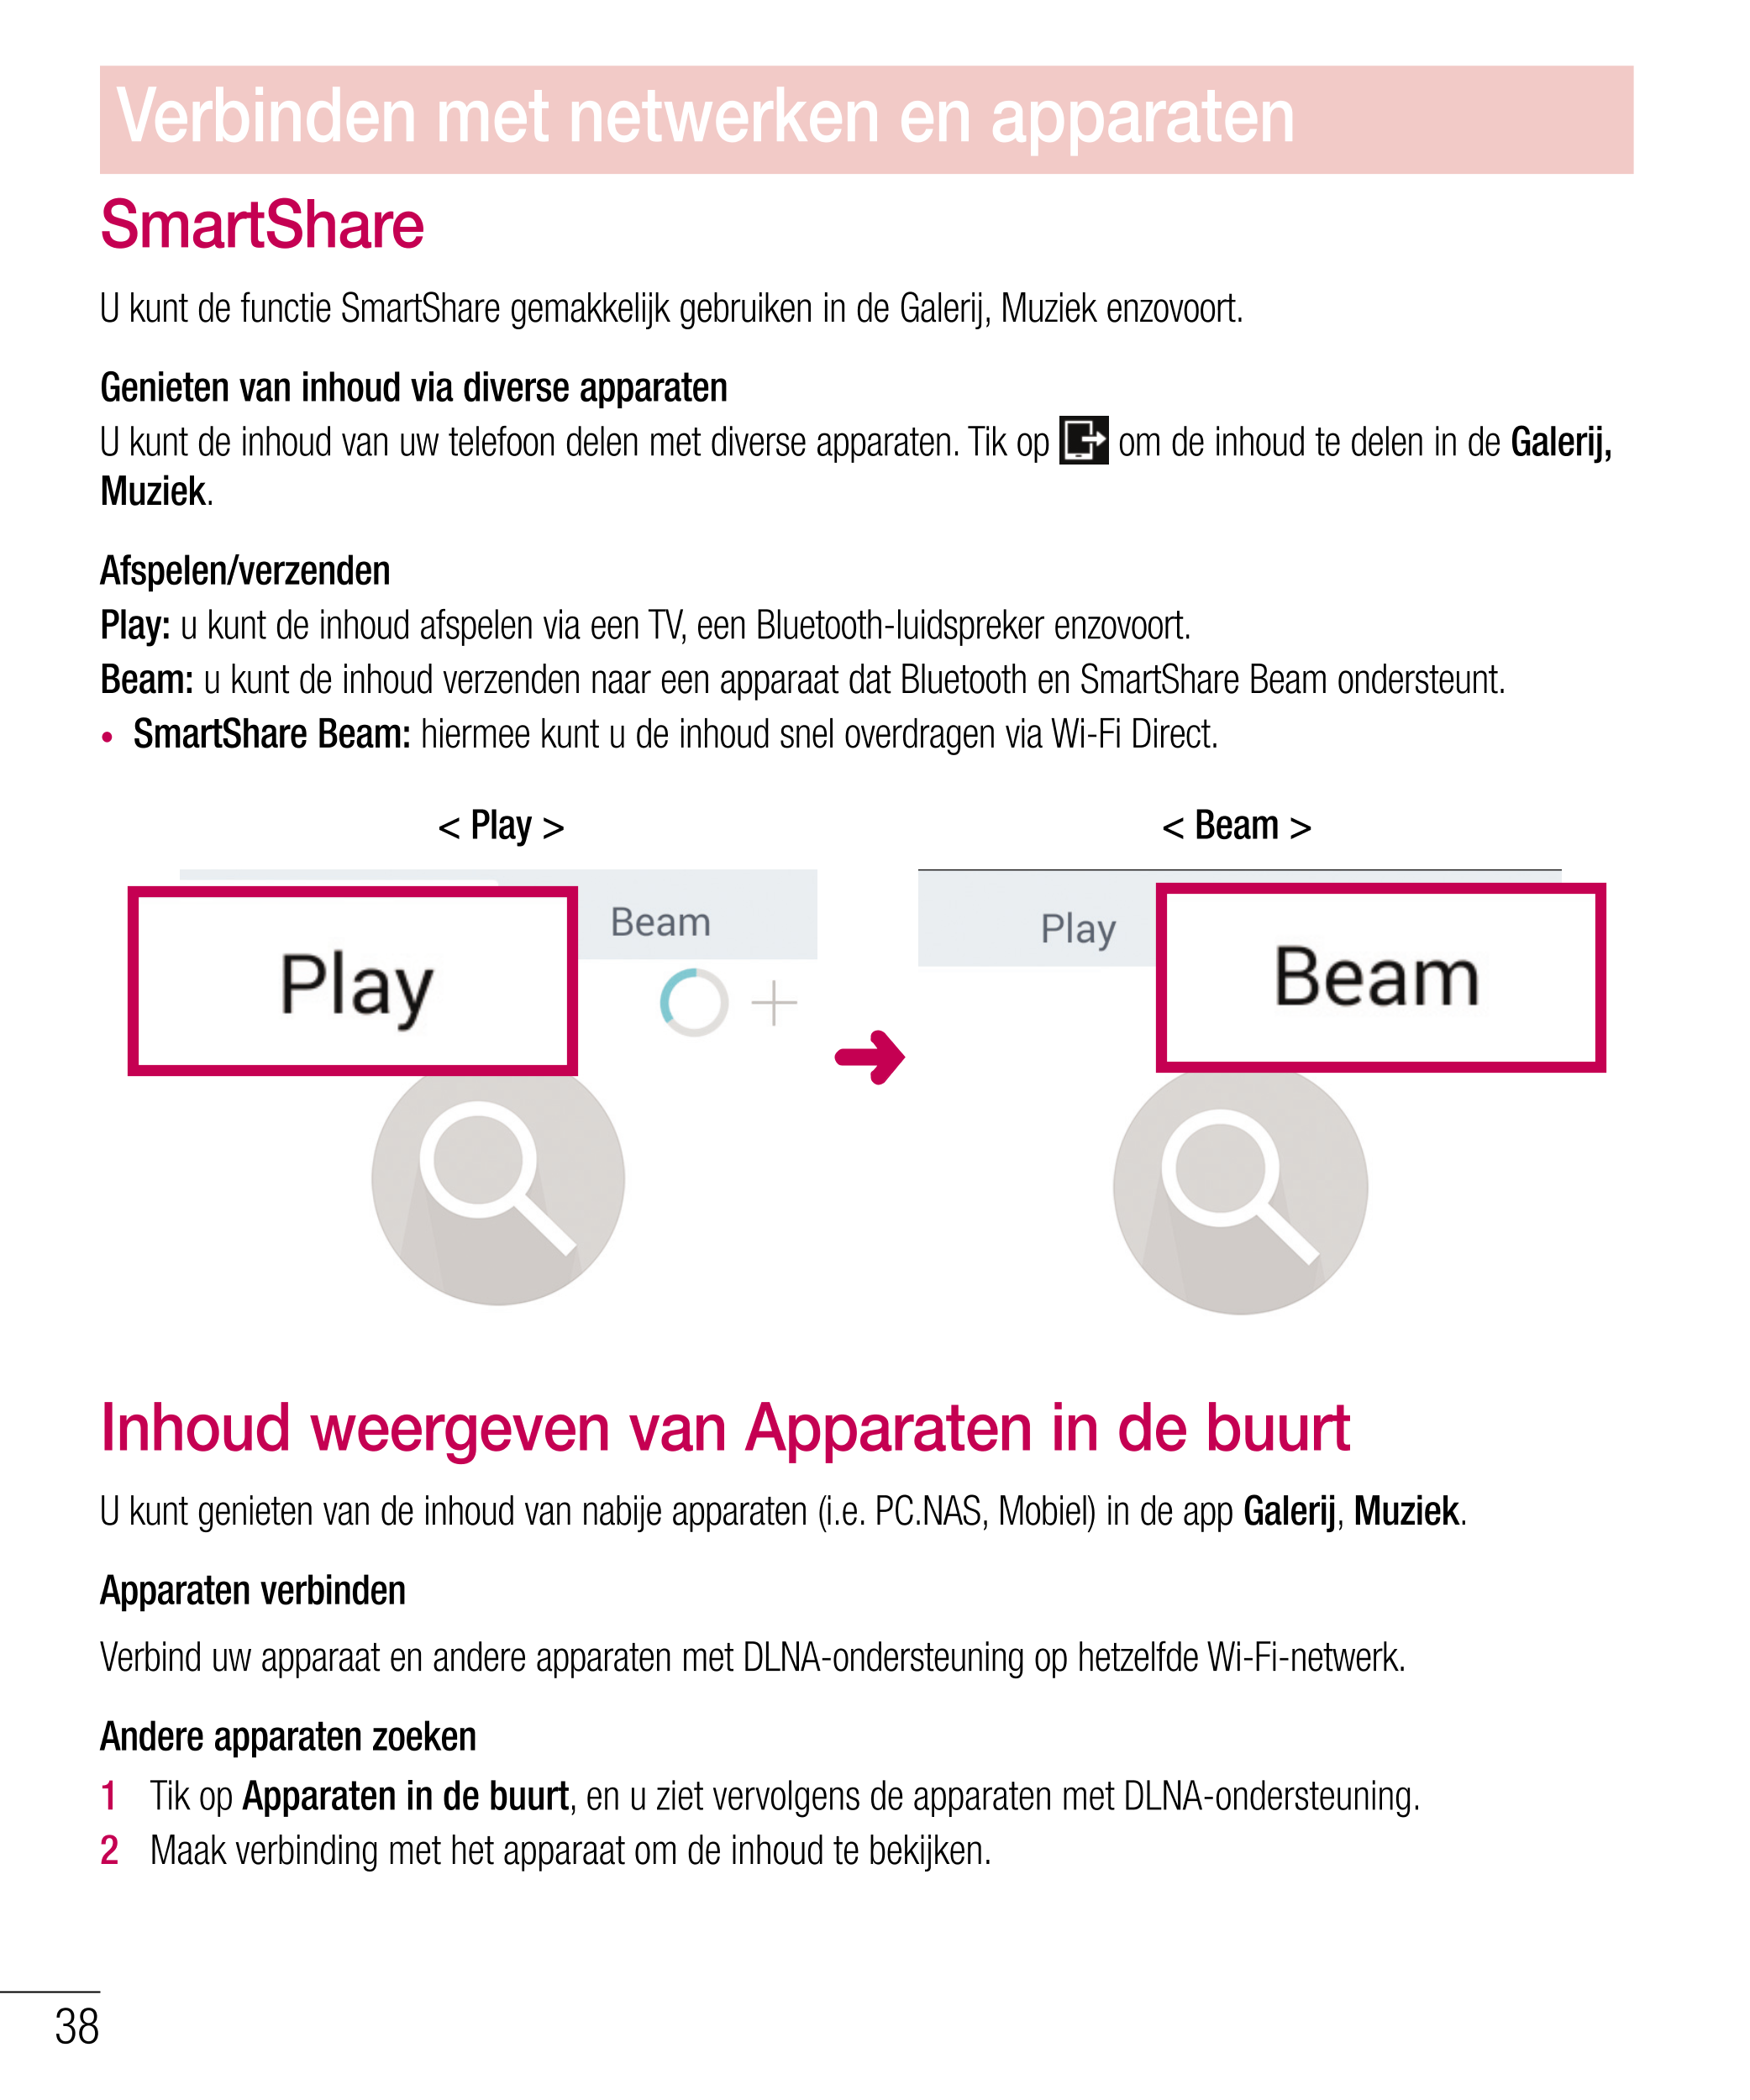 Verbinden met netwerken en apparaten
SmartShare
U kunt de functie SmartShare gemakkelijk gebruiken in de Galerij, Muziek enzovoo